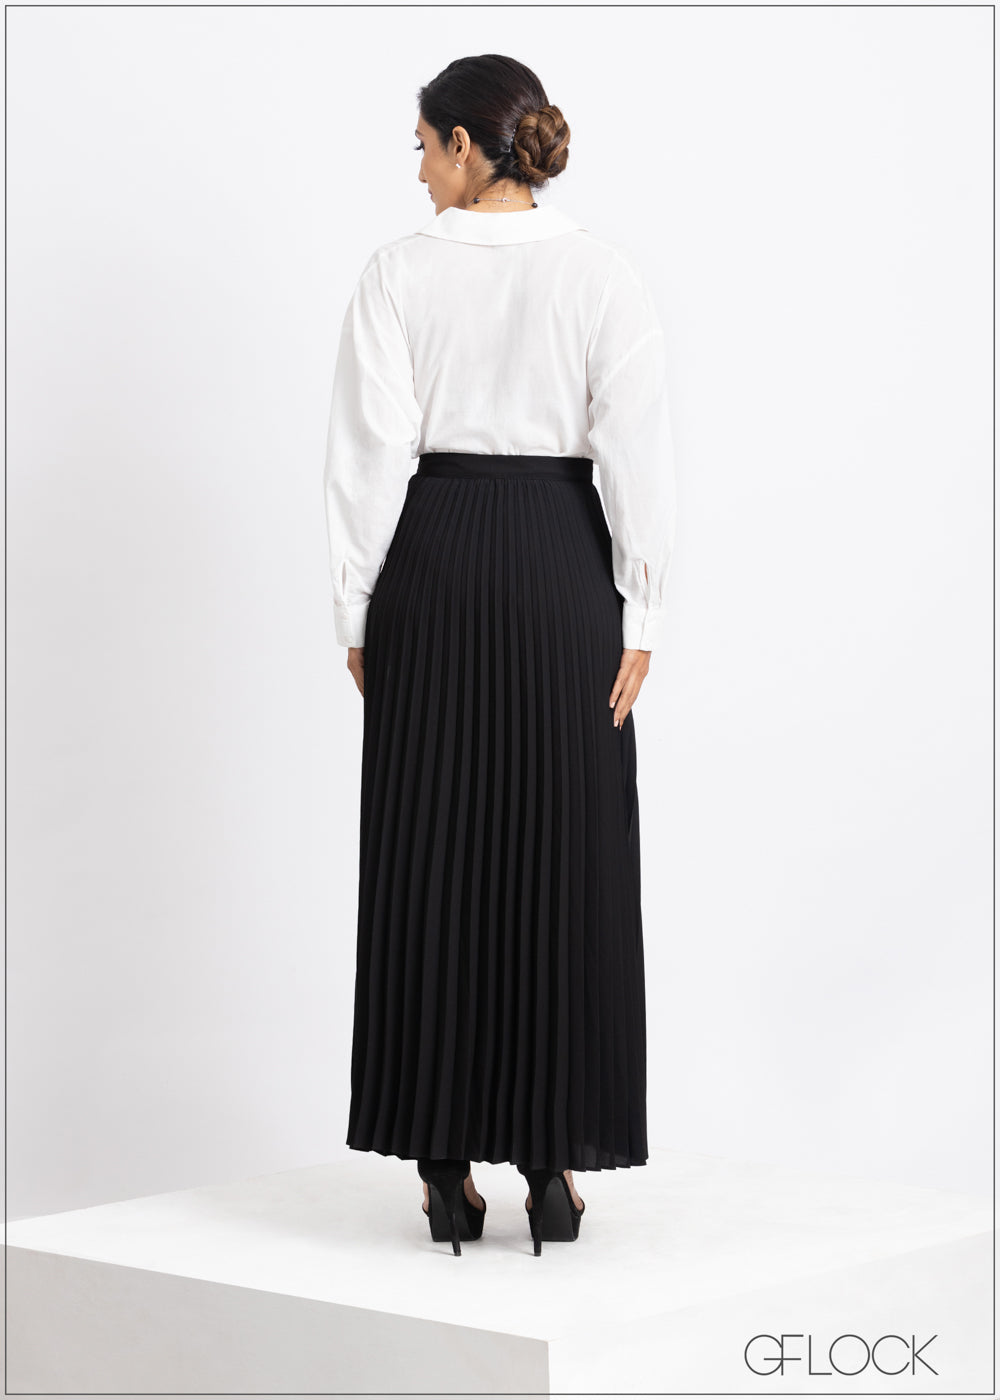 Maryanne Black Pleated Skirt